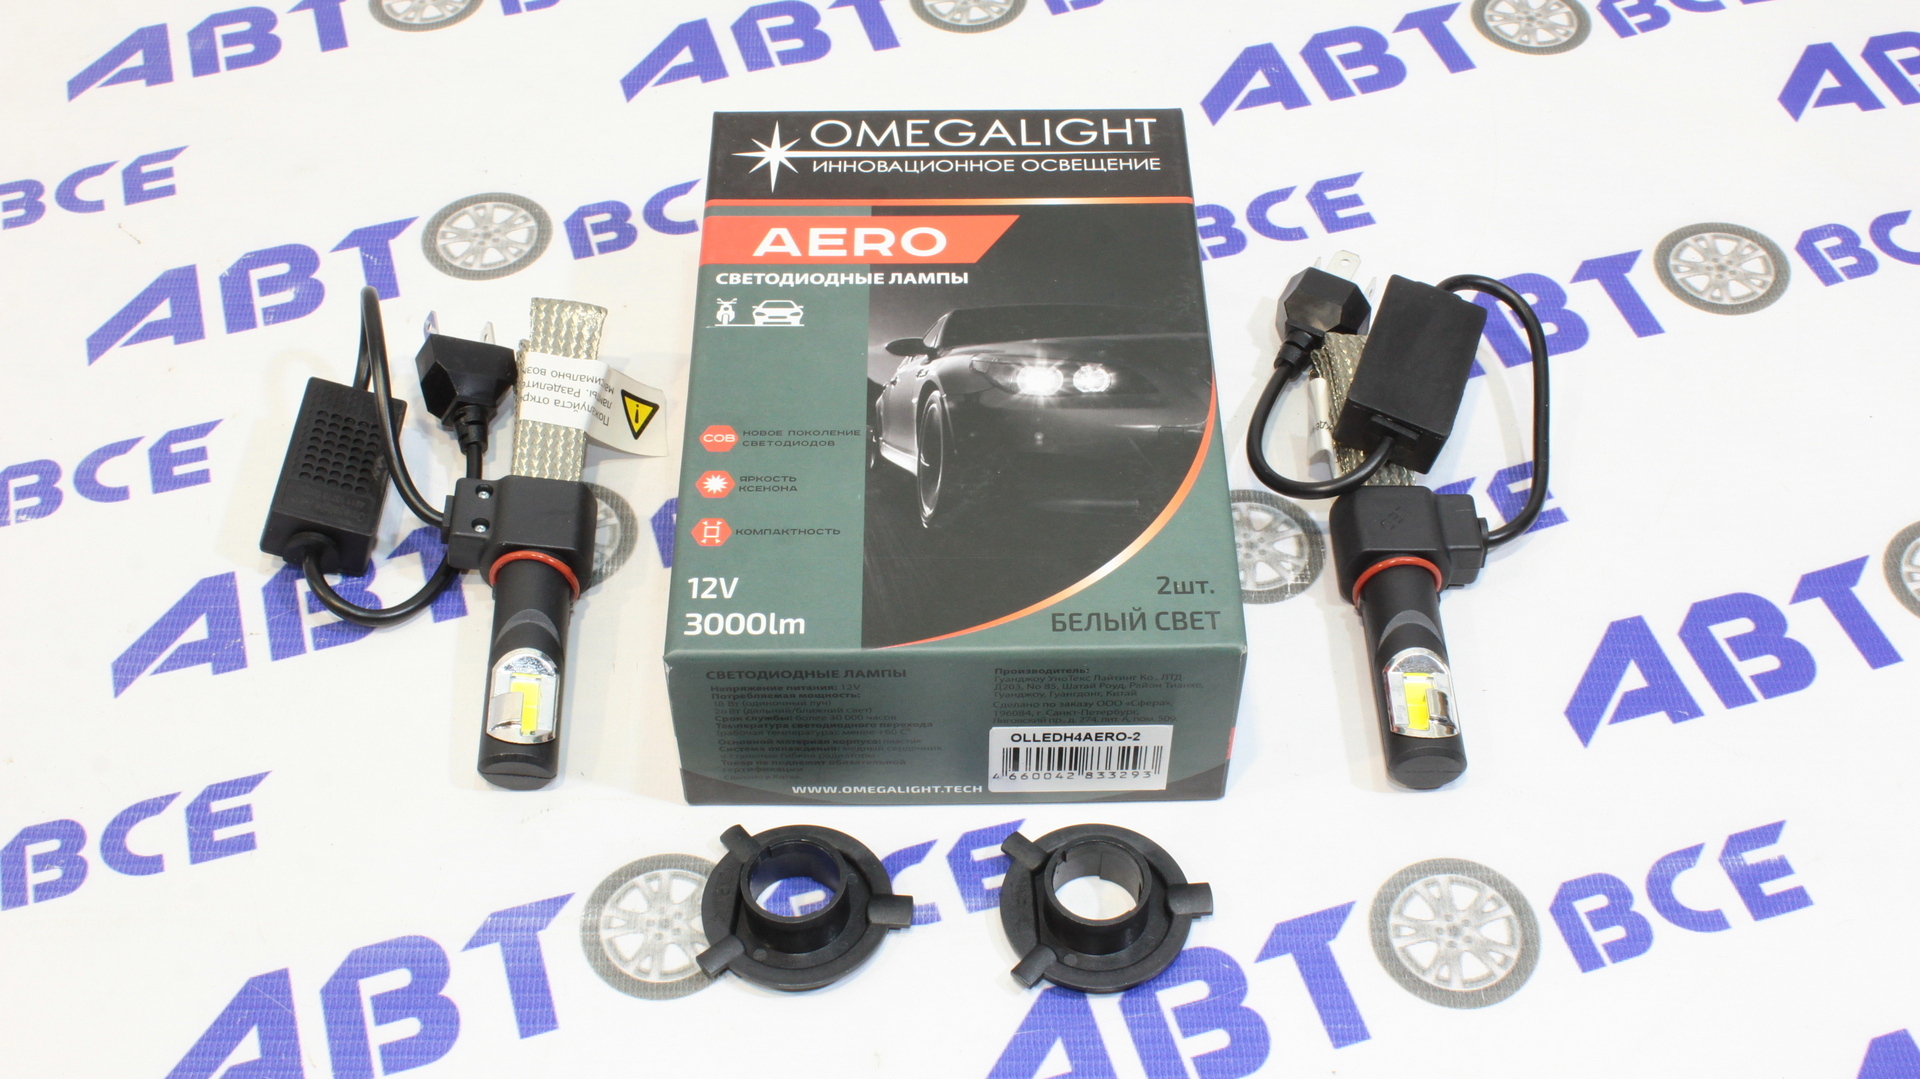 Лампа фары LED - диодная H4 Aero (гибкий кулер) комплект 2 штуки   OMEGA LIGHT